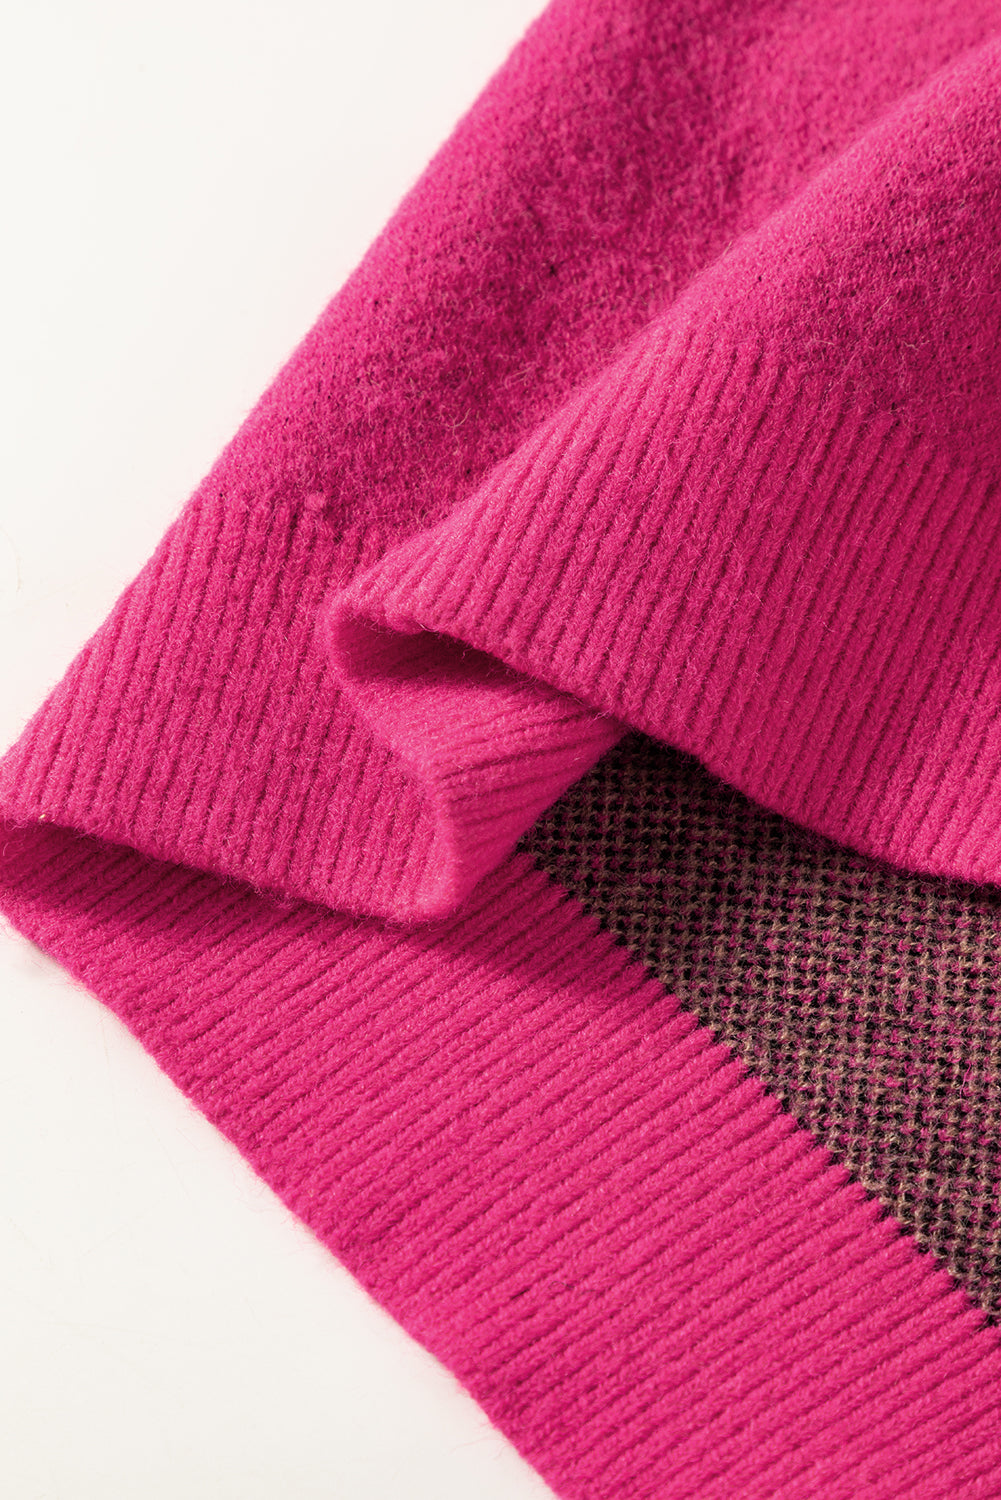 Pull tricoté décontracté à motif animal féroce rose rouge